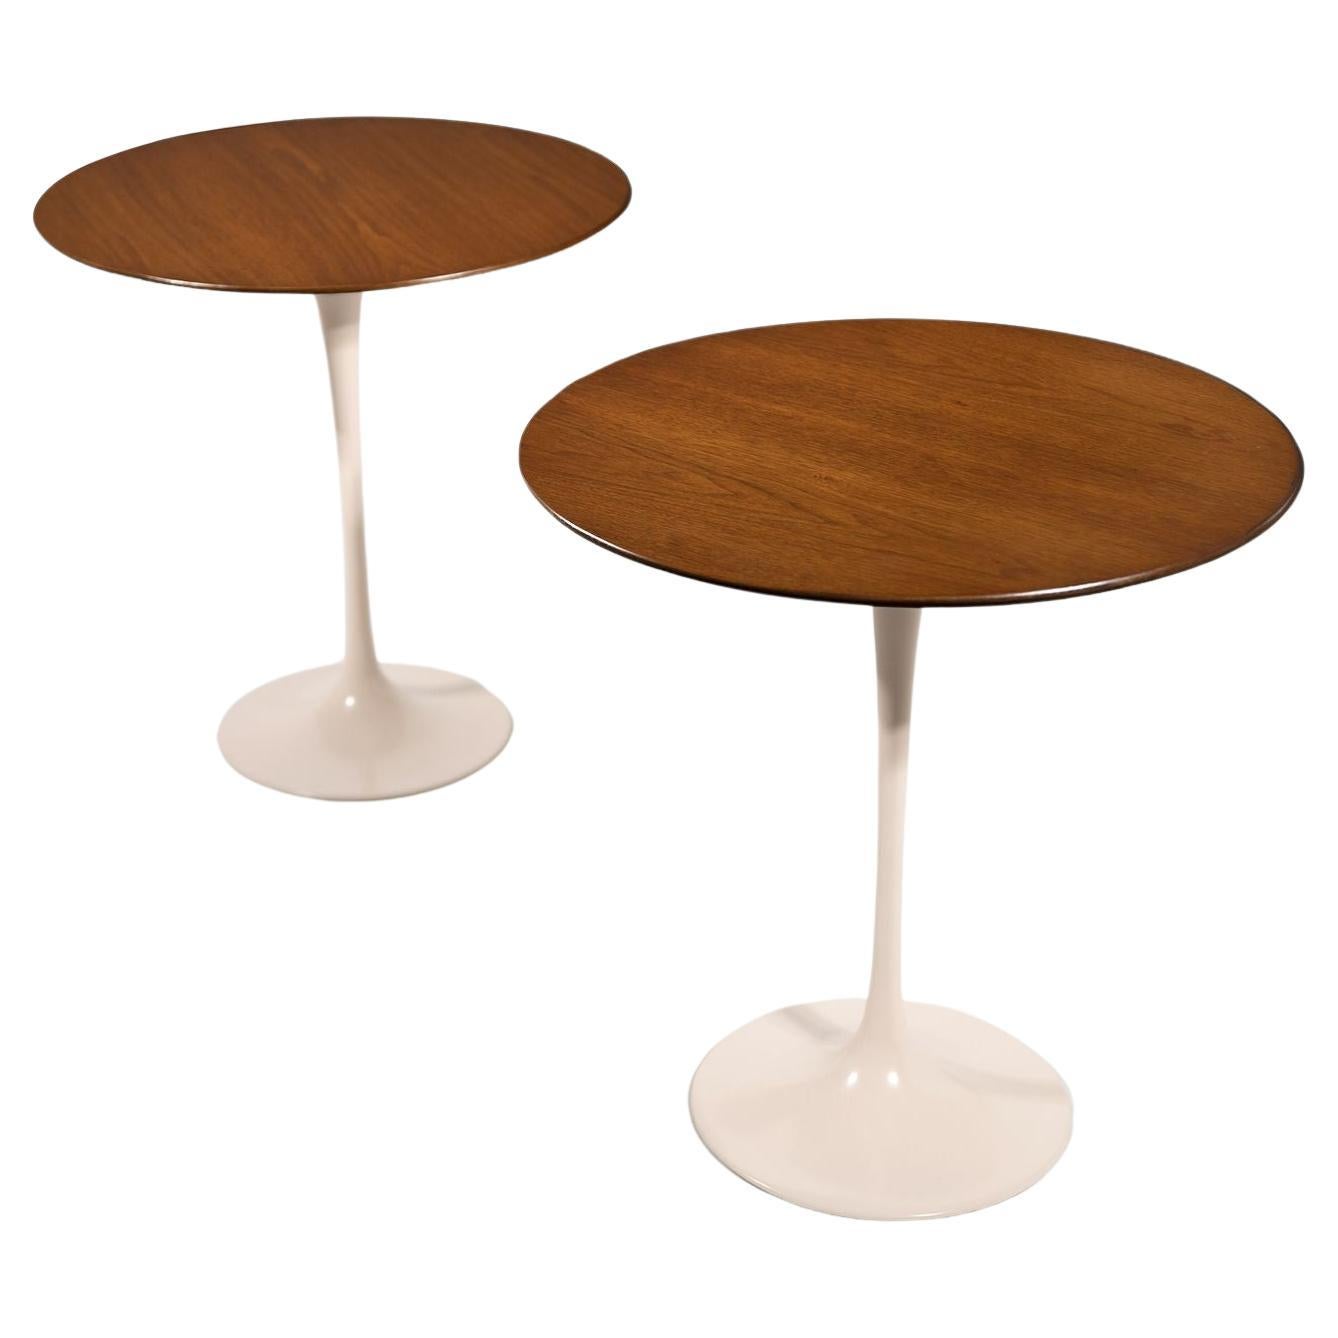 Eero Saarinen Walnut Tulip Side Table for Knoll with Walnut Tops